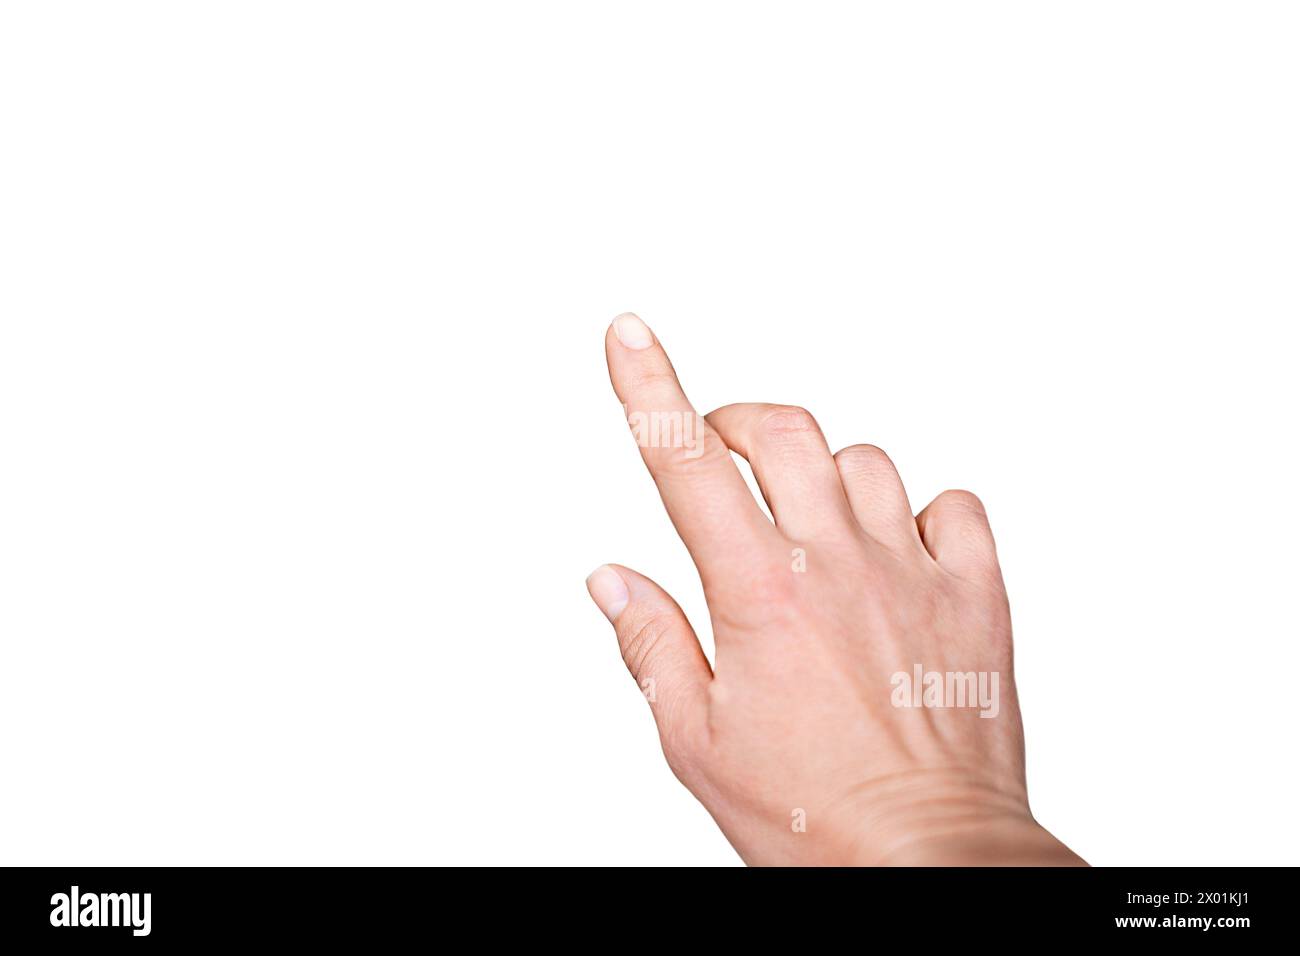 Die Frauenhand macht eine Geste, zeigt auf etwas auf einem weißen Hintergrund. Finger, Daumen, Nagel, Handgelenk und Kunstfertigkeit der Hand sind di Stockfoto